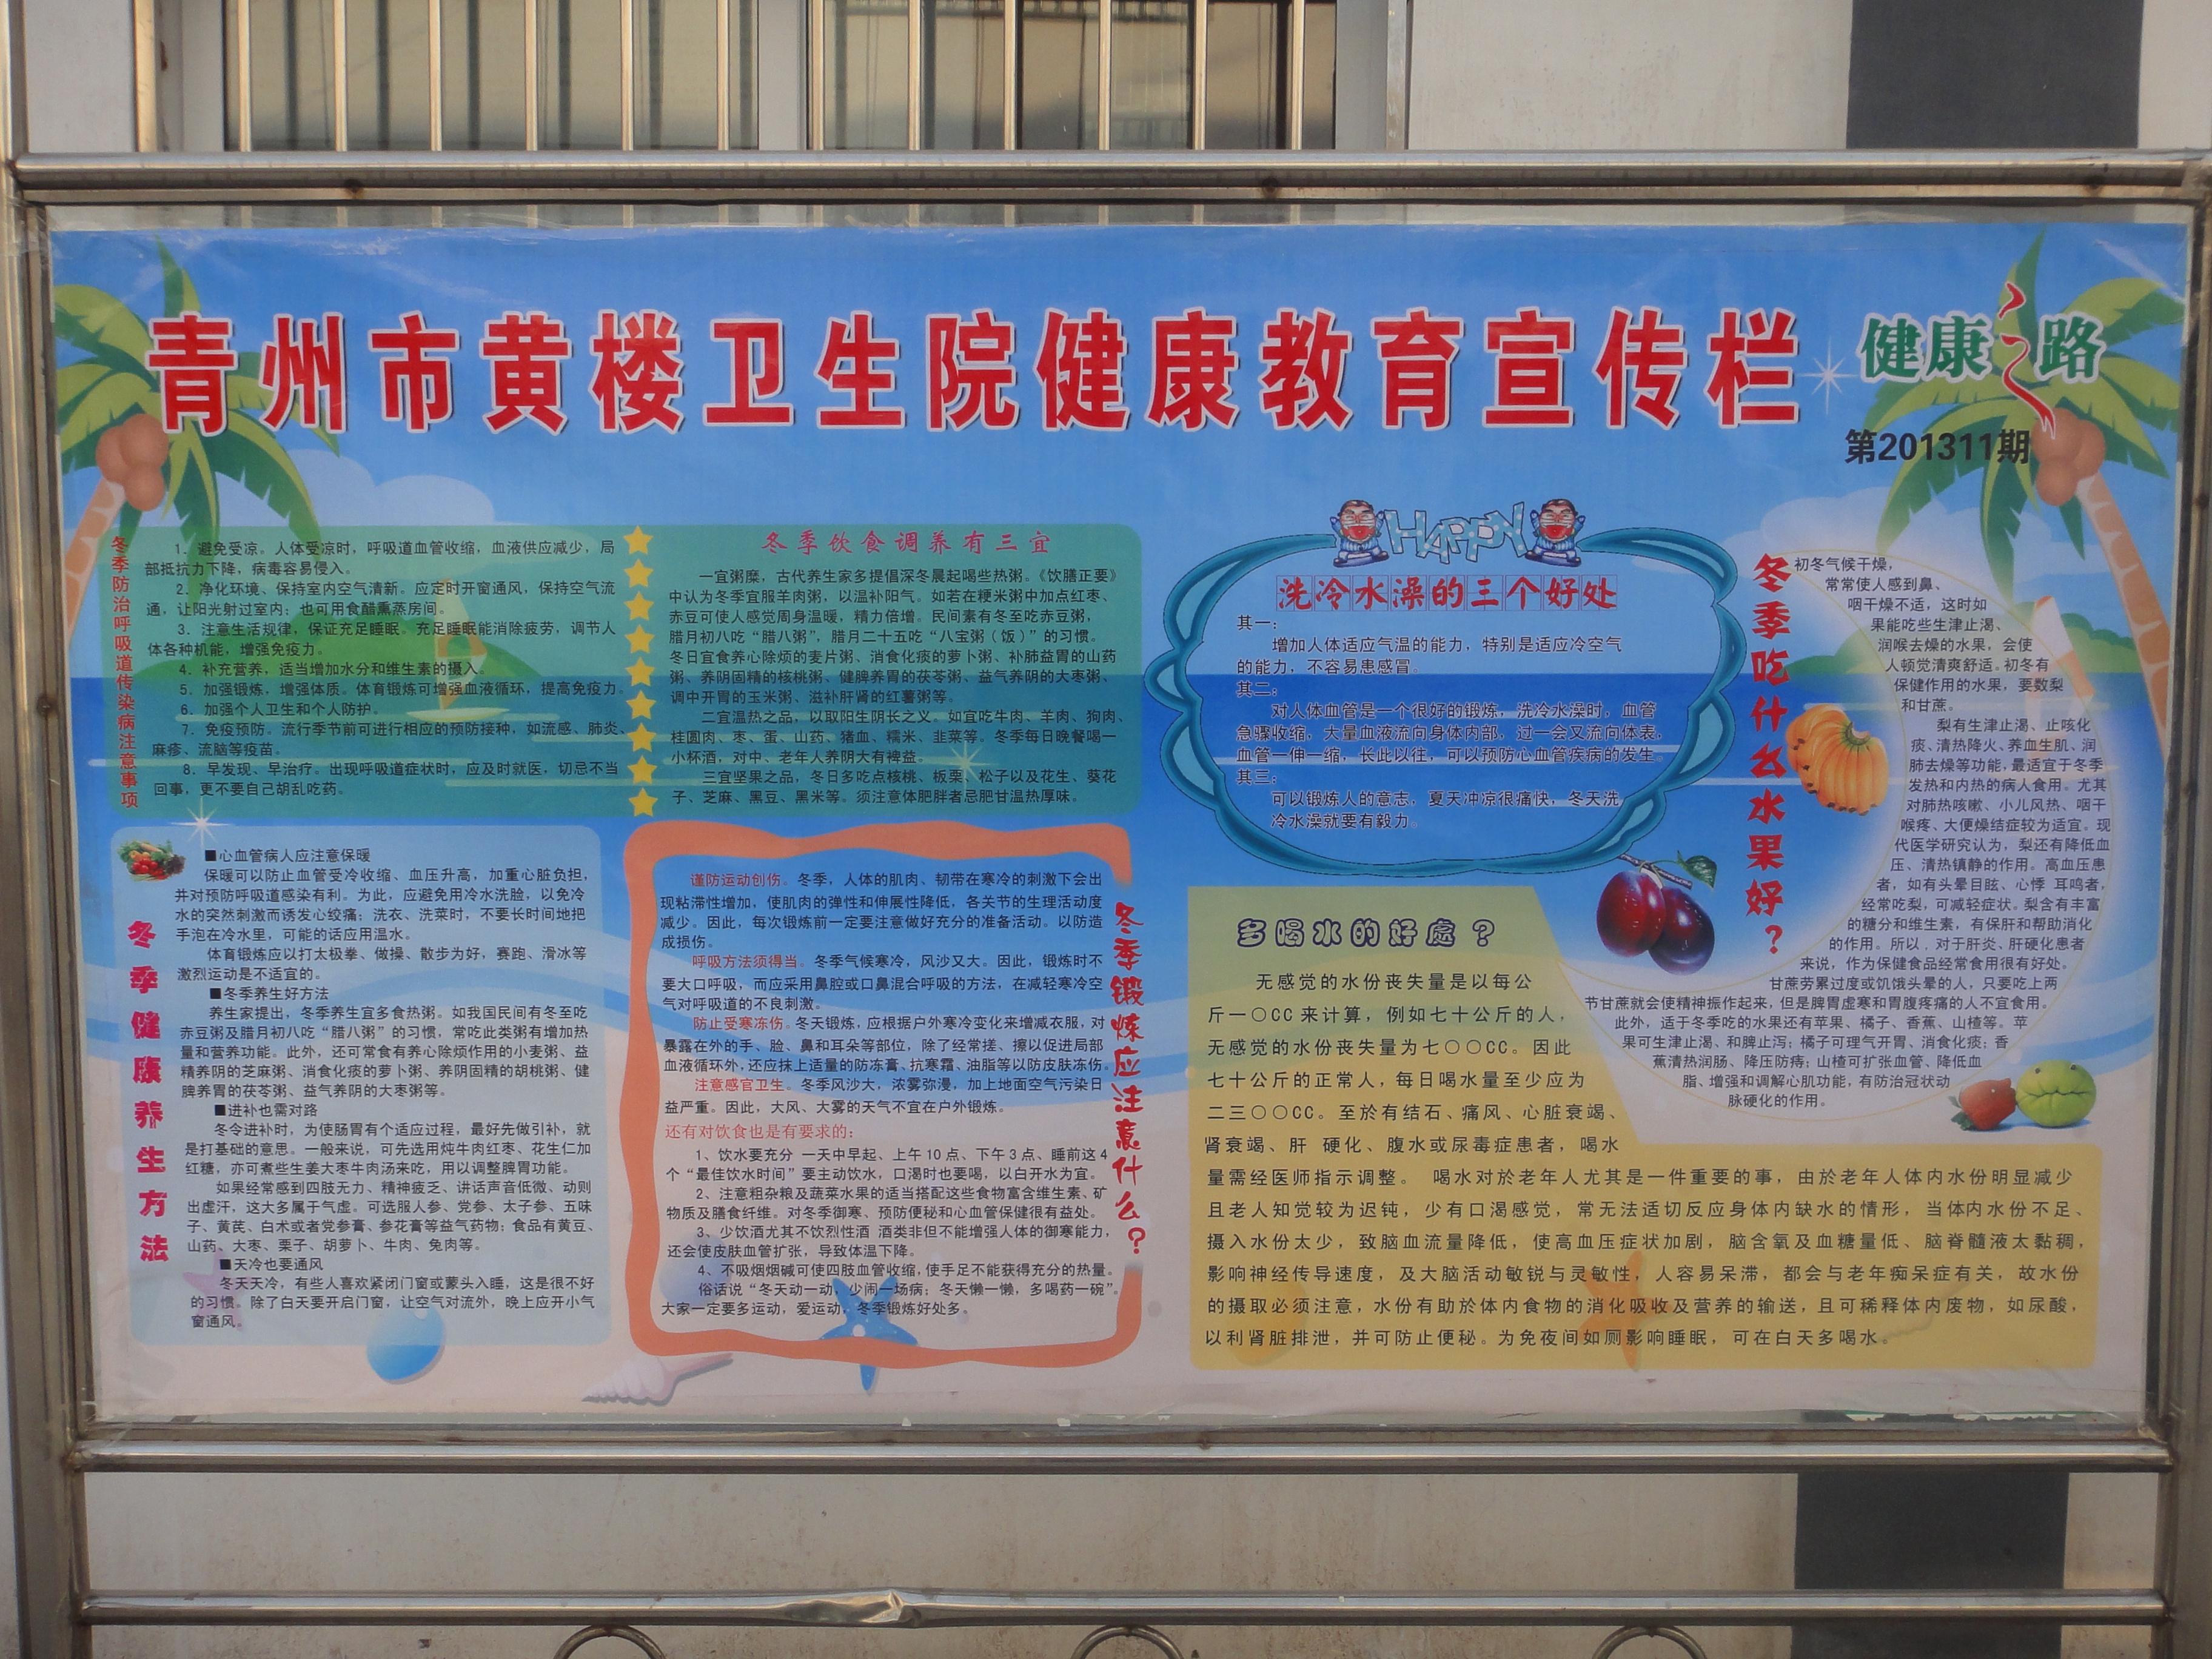 青州市黄楼卫生院健康教育宣传栏更新至201312期